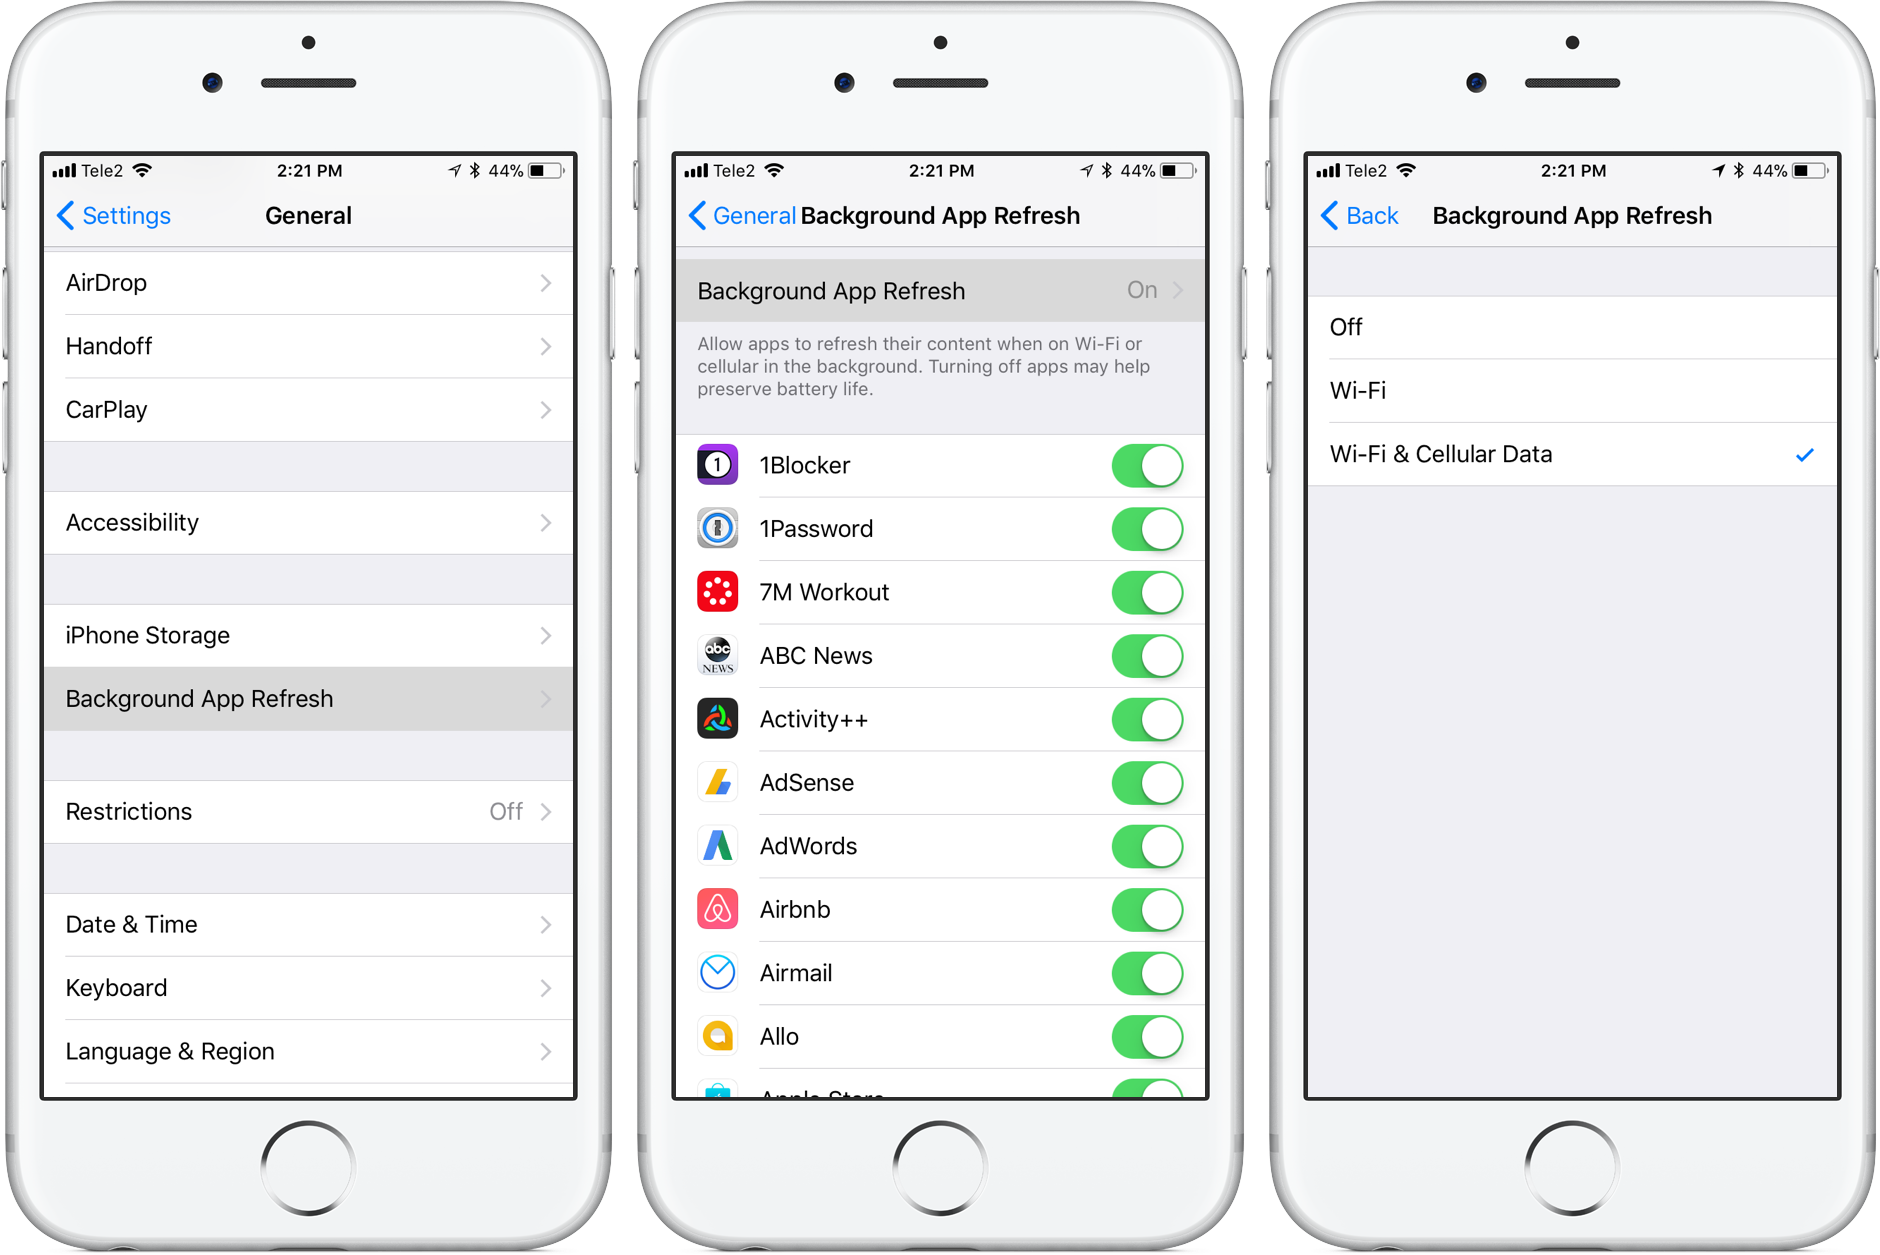         Tắt ứng dụng nền. Cập nhật một số ứng dụng nhất định để tiết kiệm pin và đảm bảo chi phí nhanh hơn nếu bạn thấy rằng iPhone của mình đang sạc chậm